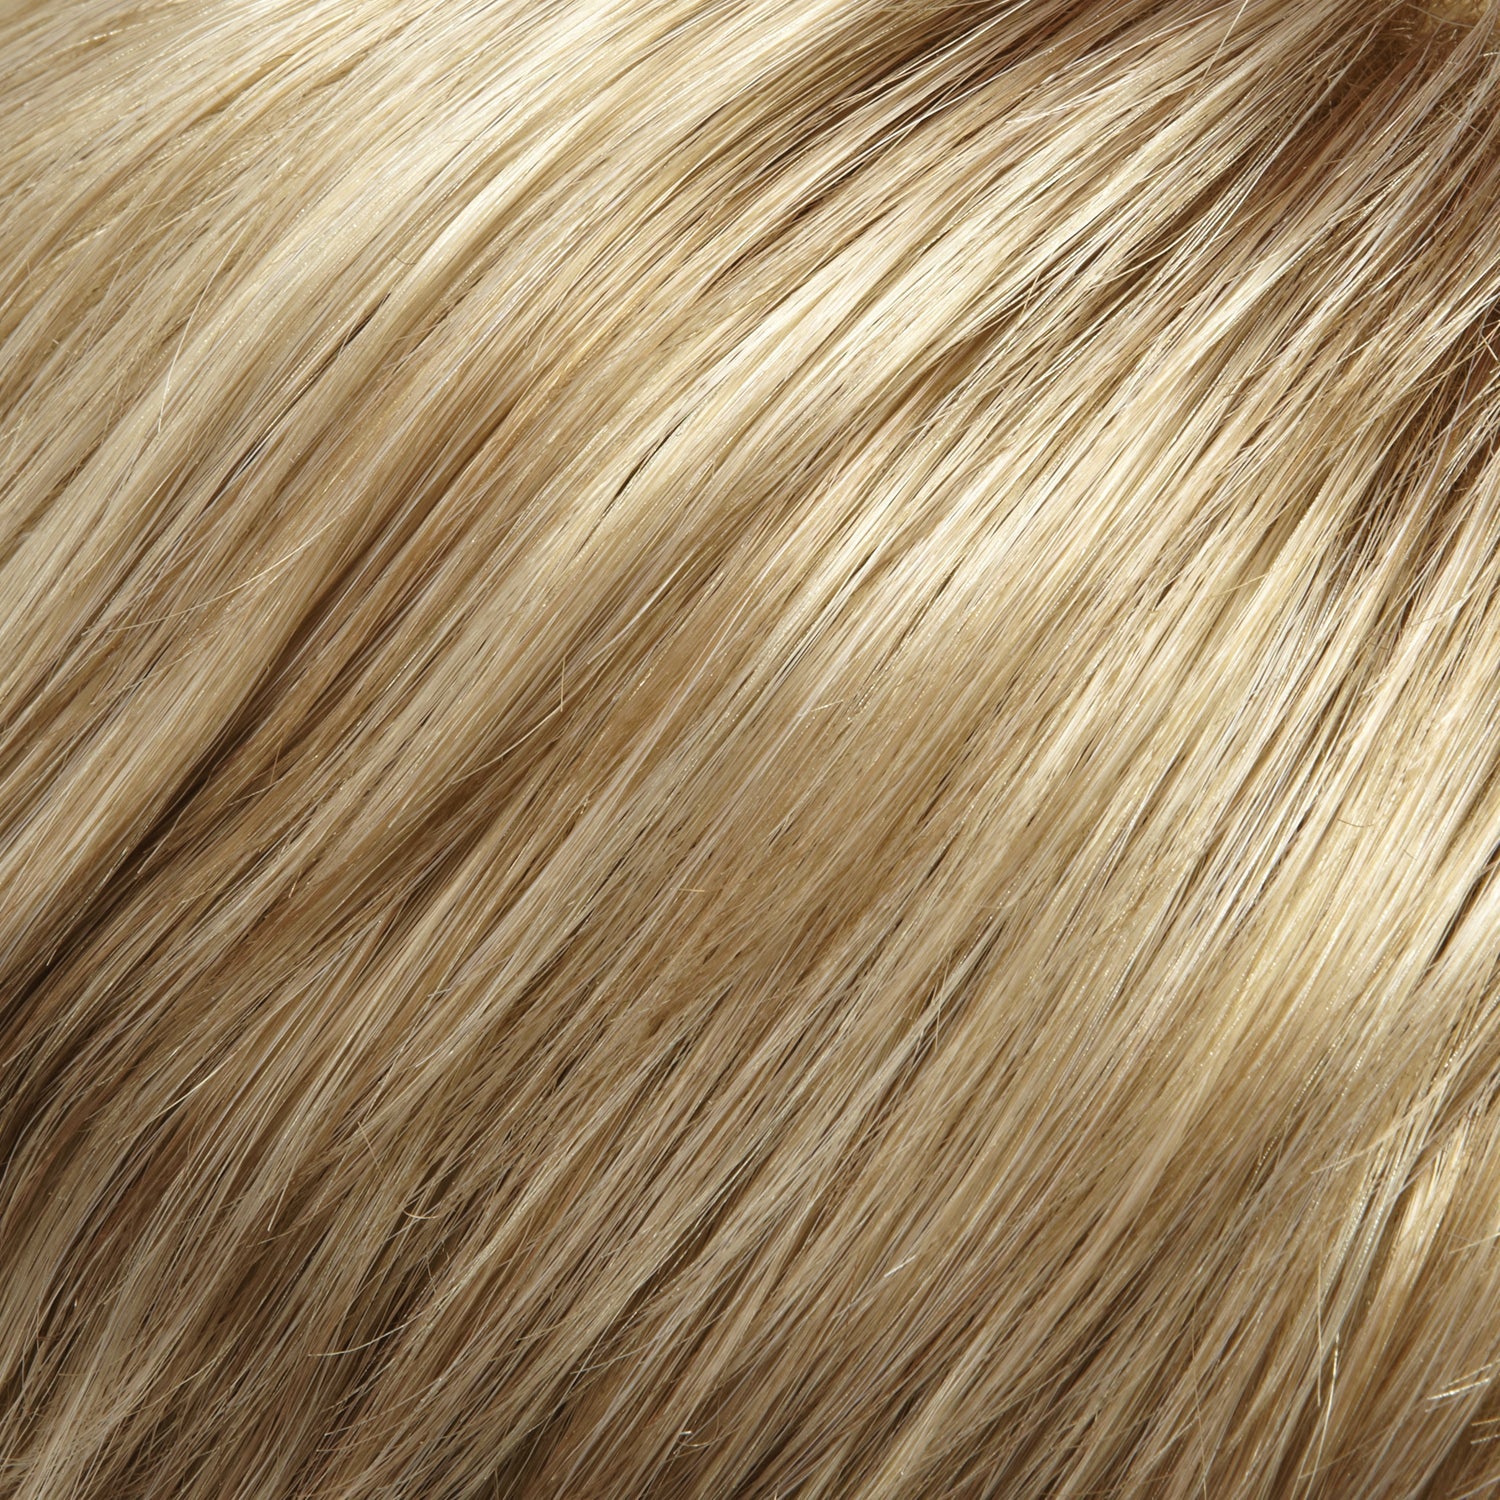 14/24 medium natural - ash blonde & lt natural blonde blend